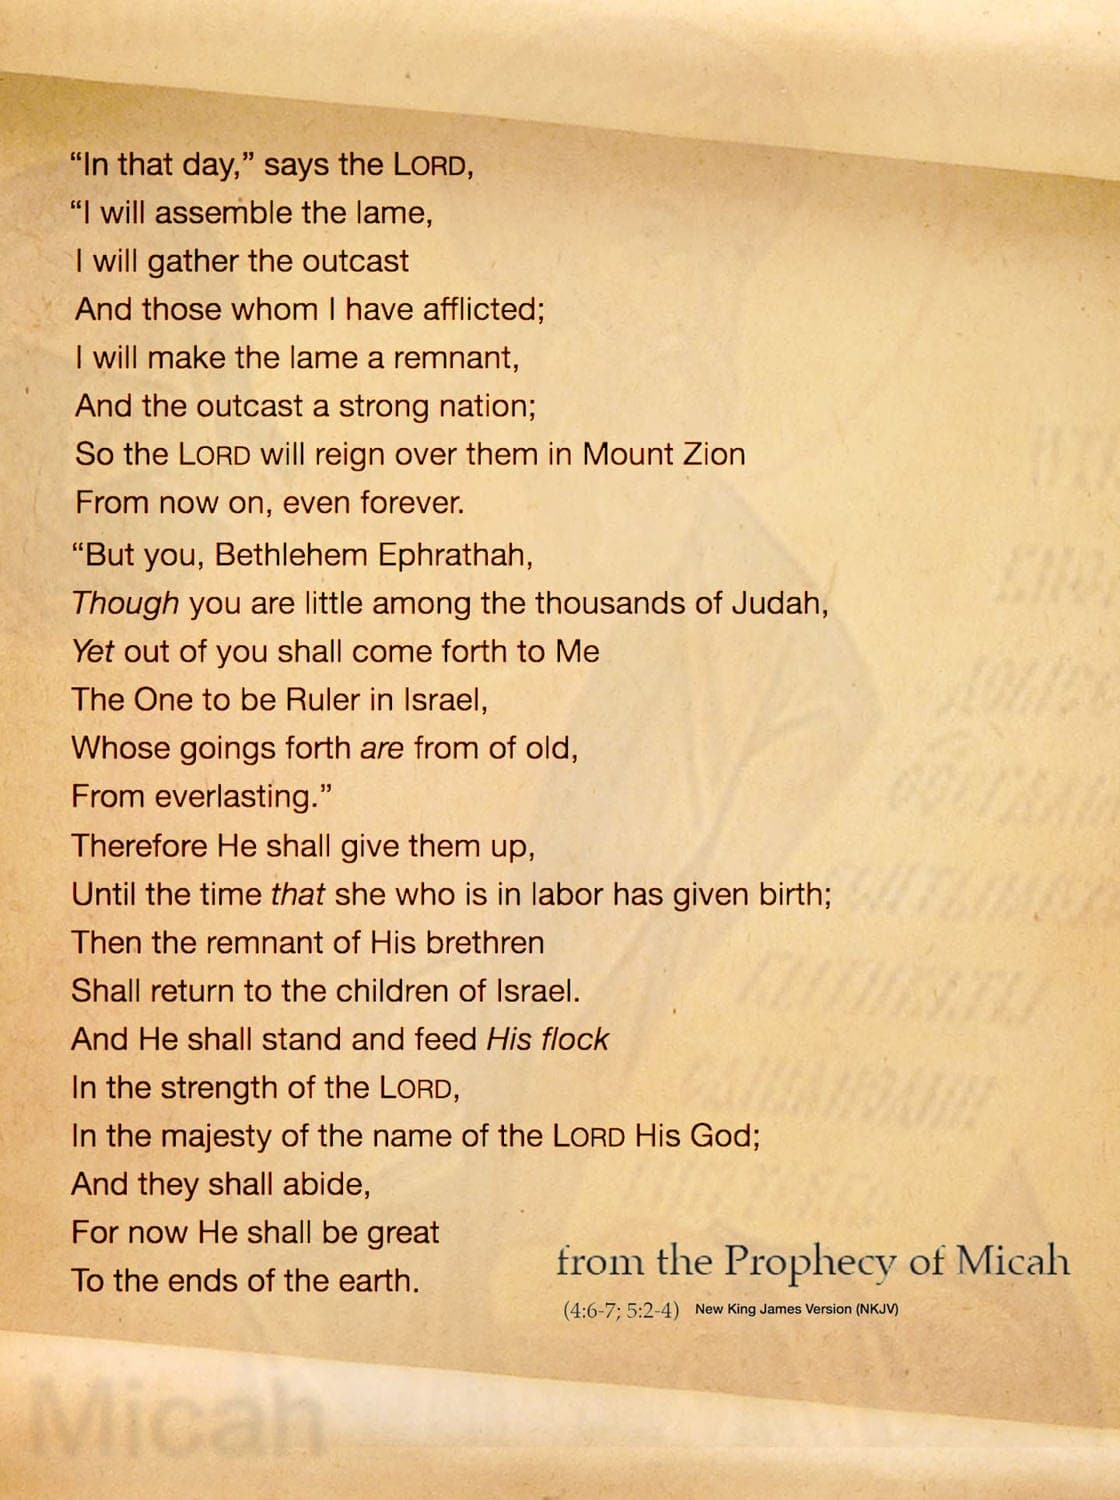 Prophet-micah-prophecy